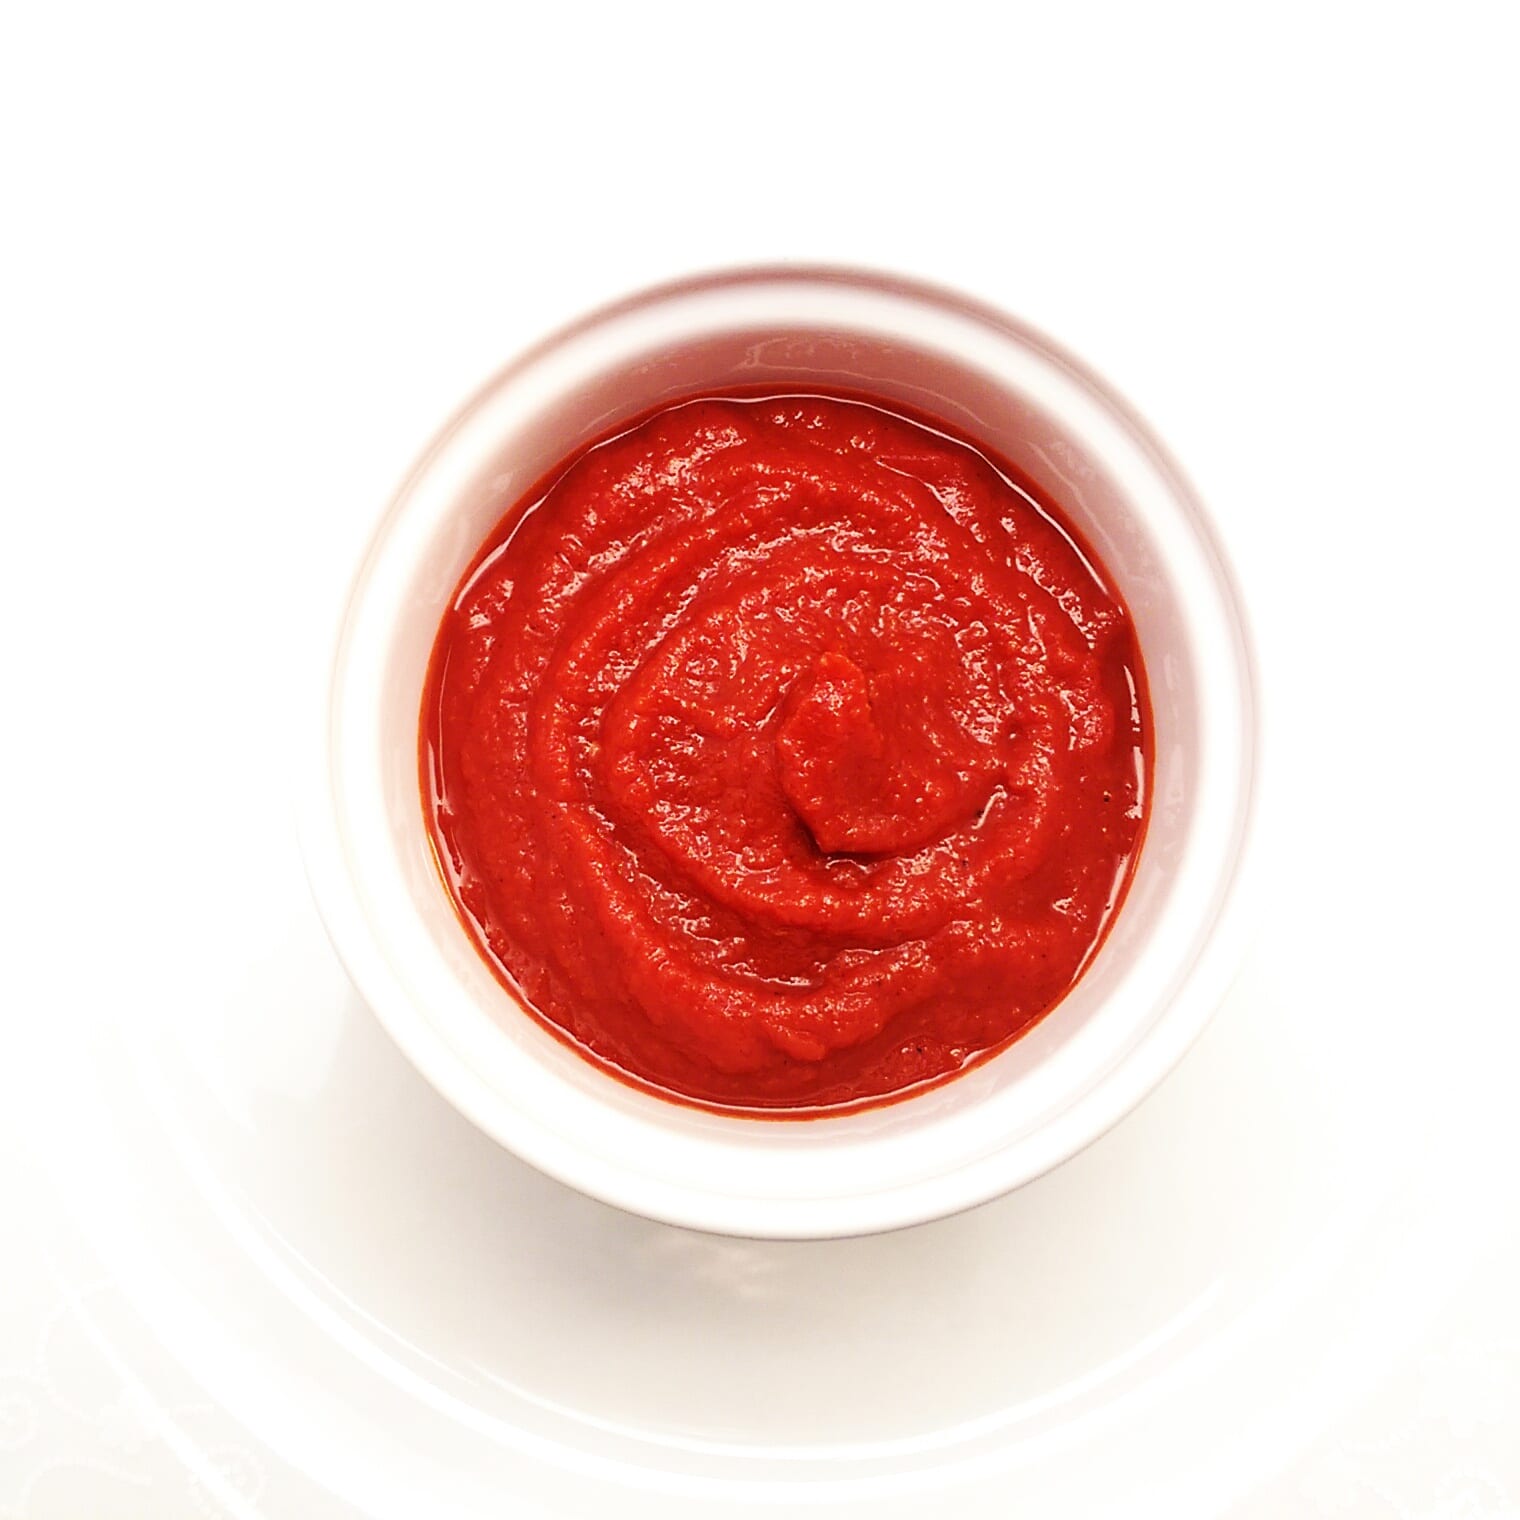 bright red tomato sauce in a white ramekin